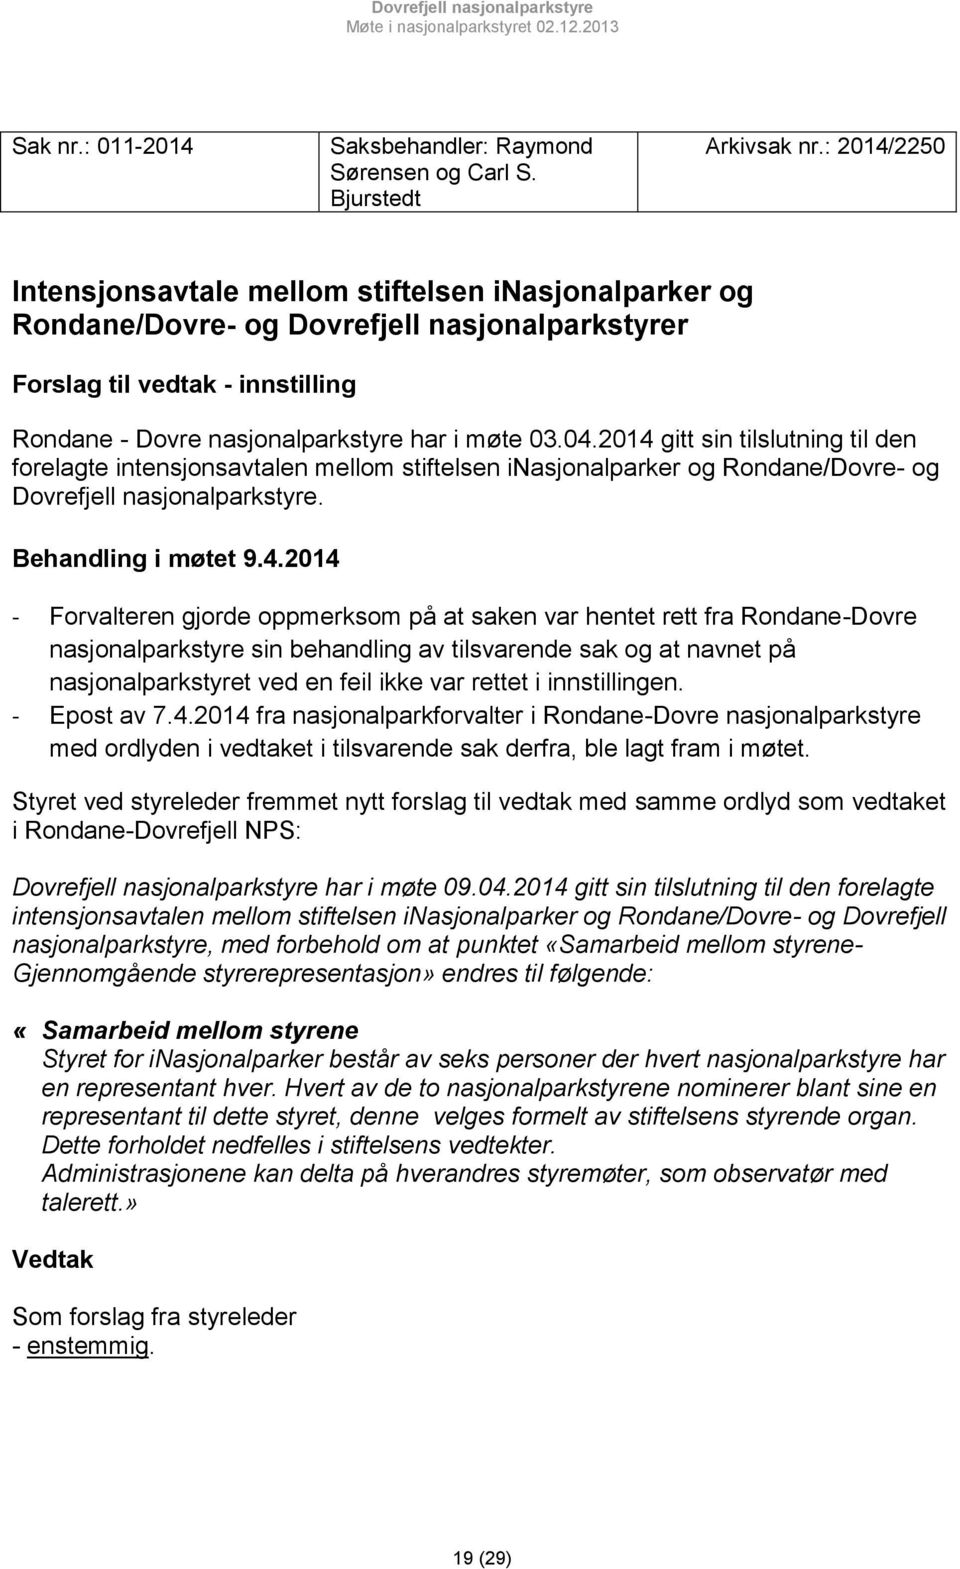 2014 gitt sin tilslutning til den forelagte intensjonsavtalen mellom stiftelsen inasjonalparker og Rondane/Dovre- og Dovrefjell nasjonalparkstyre. Behandling i møtet 9.4.2014 - Forvalteren gjorde